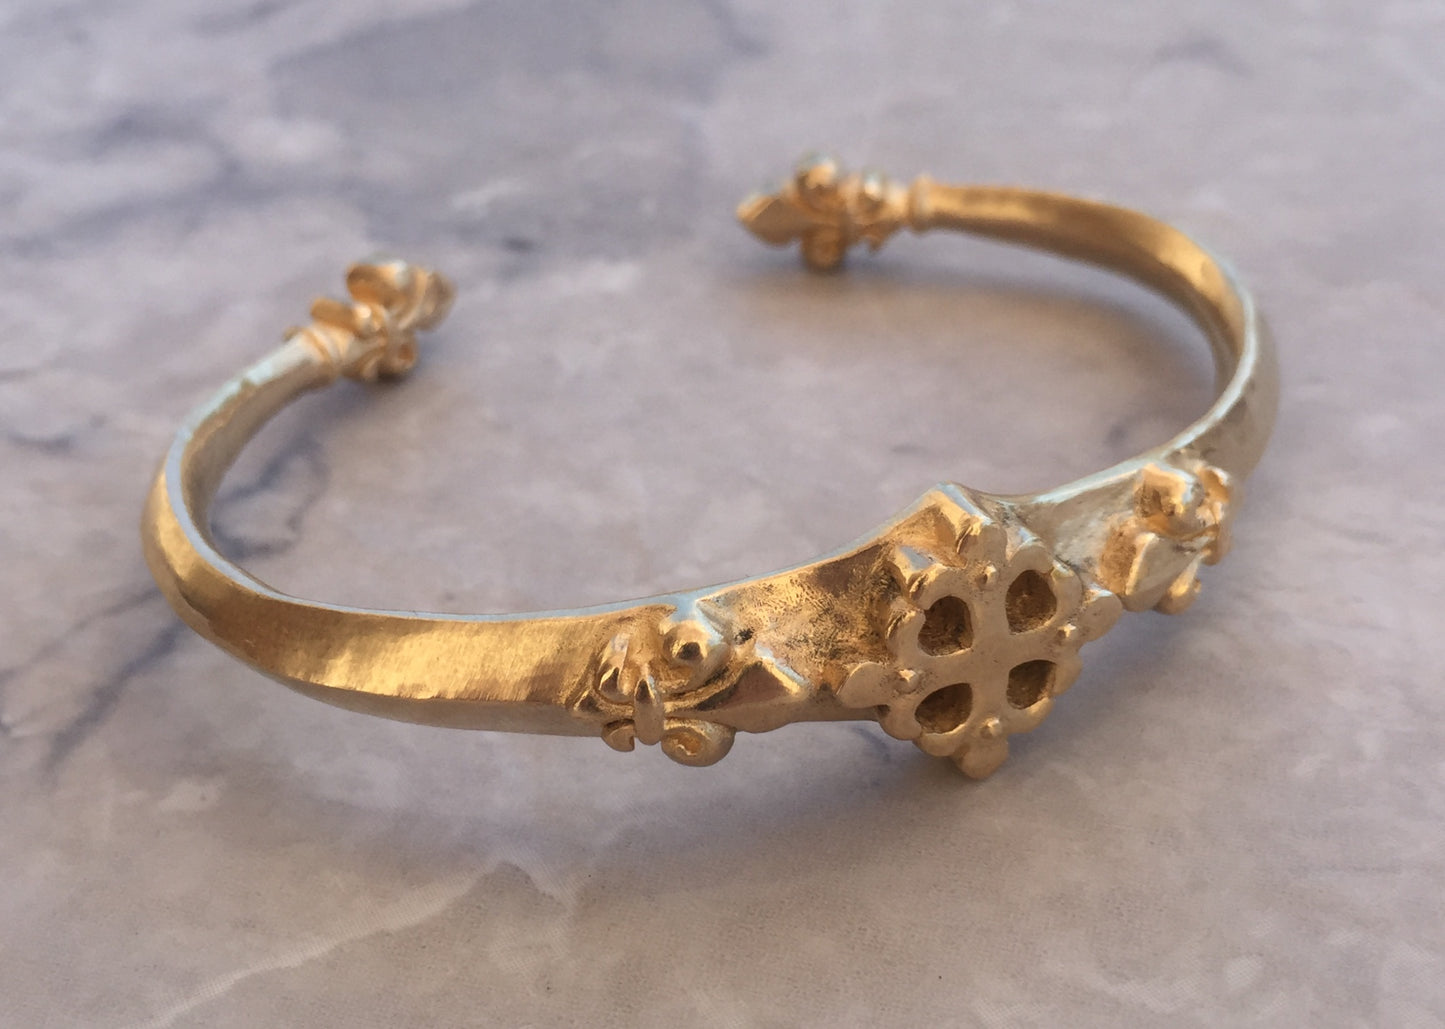 Bracelet - Gold Renaissance Fleur de Lis cuff